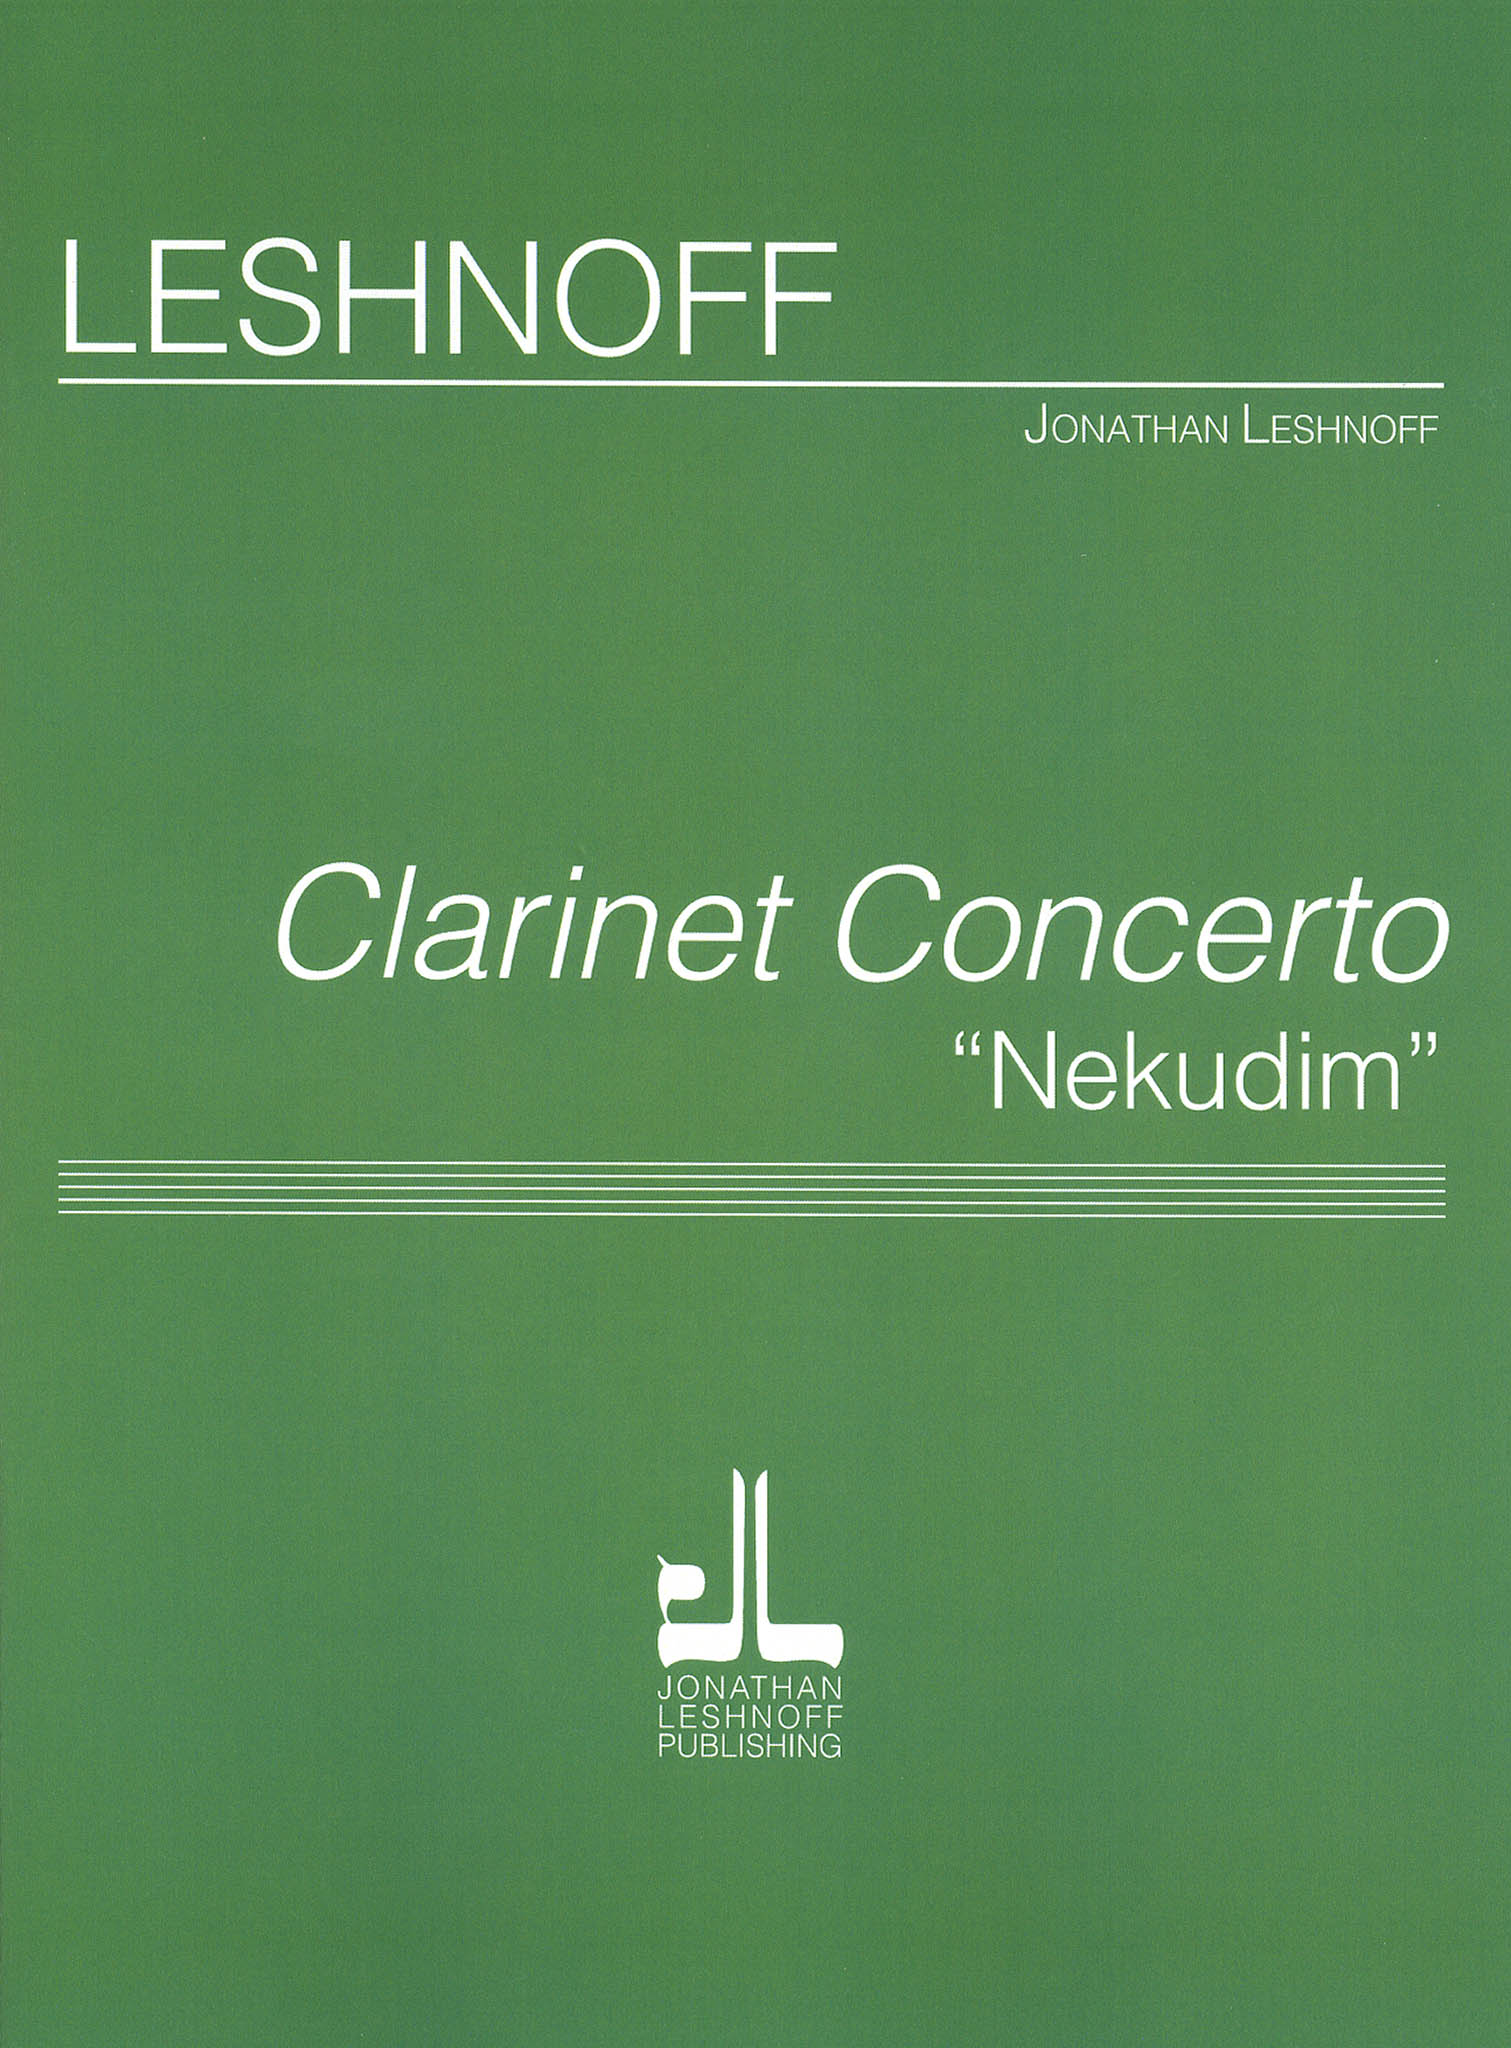 Leshnoff Clarinet Concerto ‘Nekudim’ full score Cover